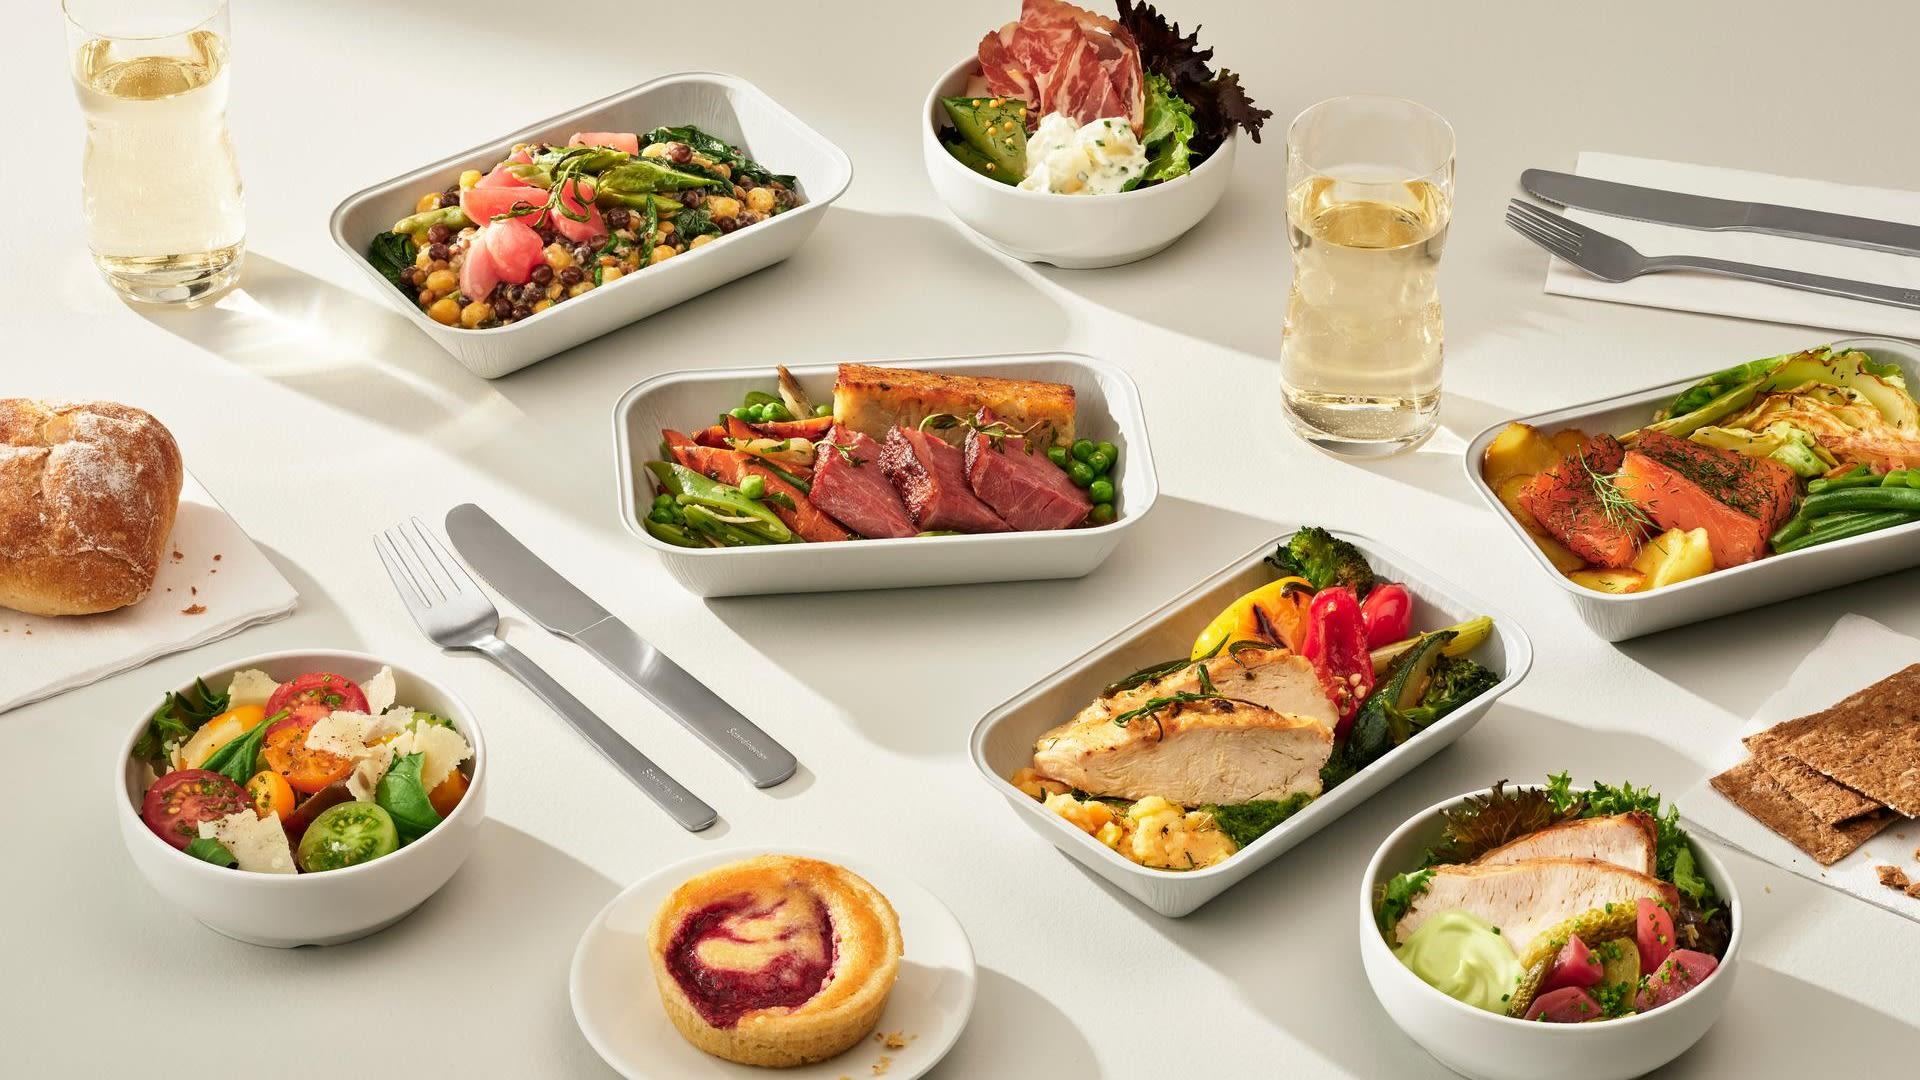 大多数航班都可以预订餐食